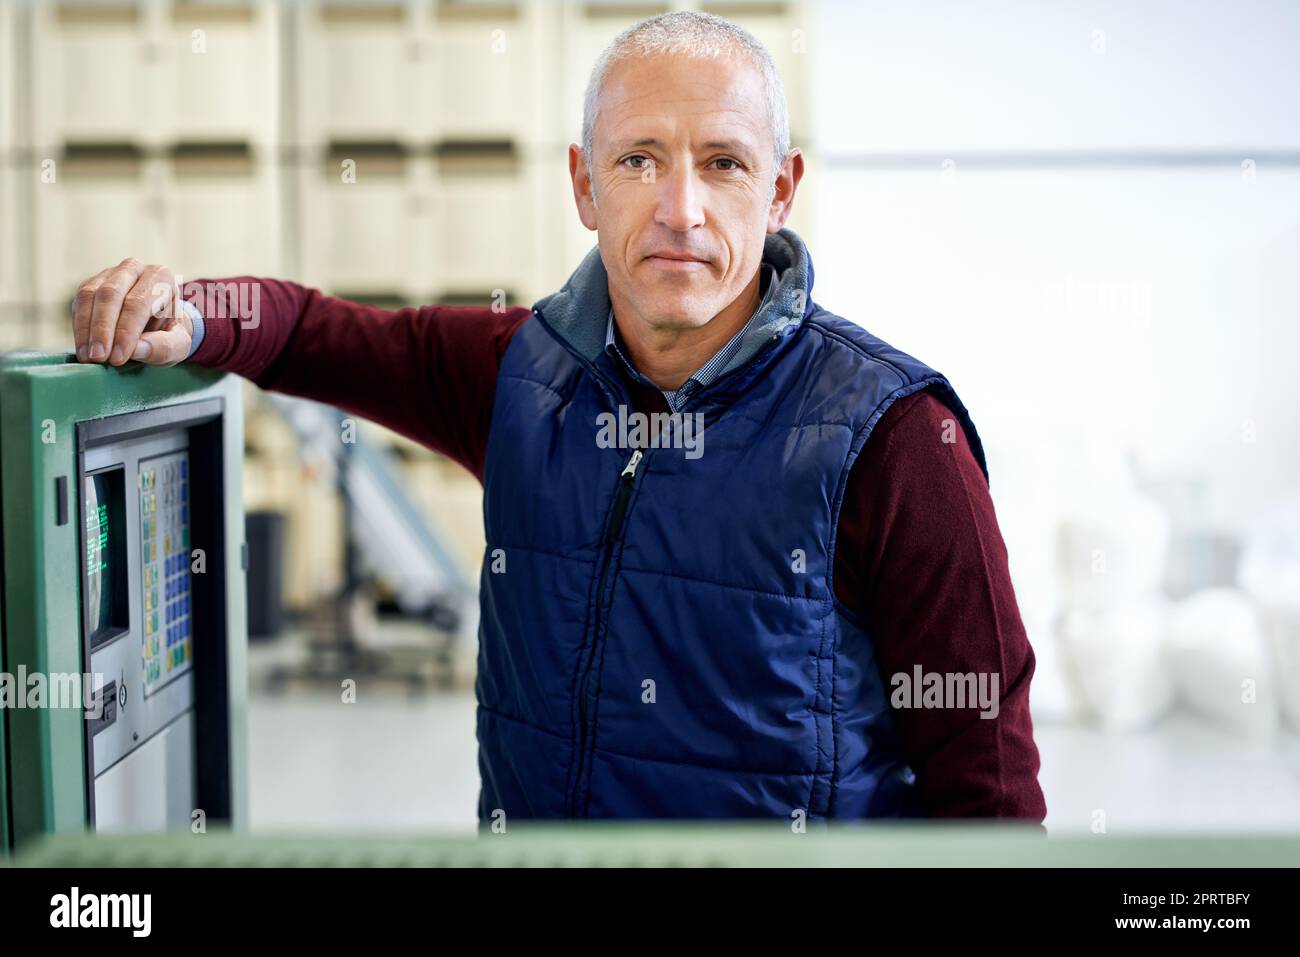 Non assicurarsi che questo macchinario funzioni regolarmente. Ritratto di un uomo maturo in piedi accanto a un macchinario in una fabbrica. Foto Stock